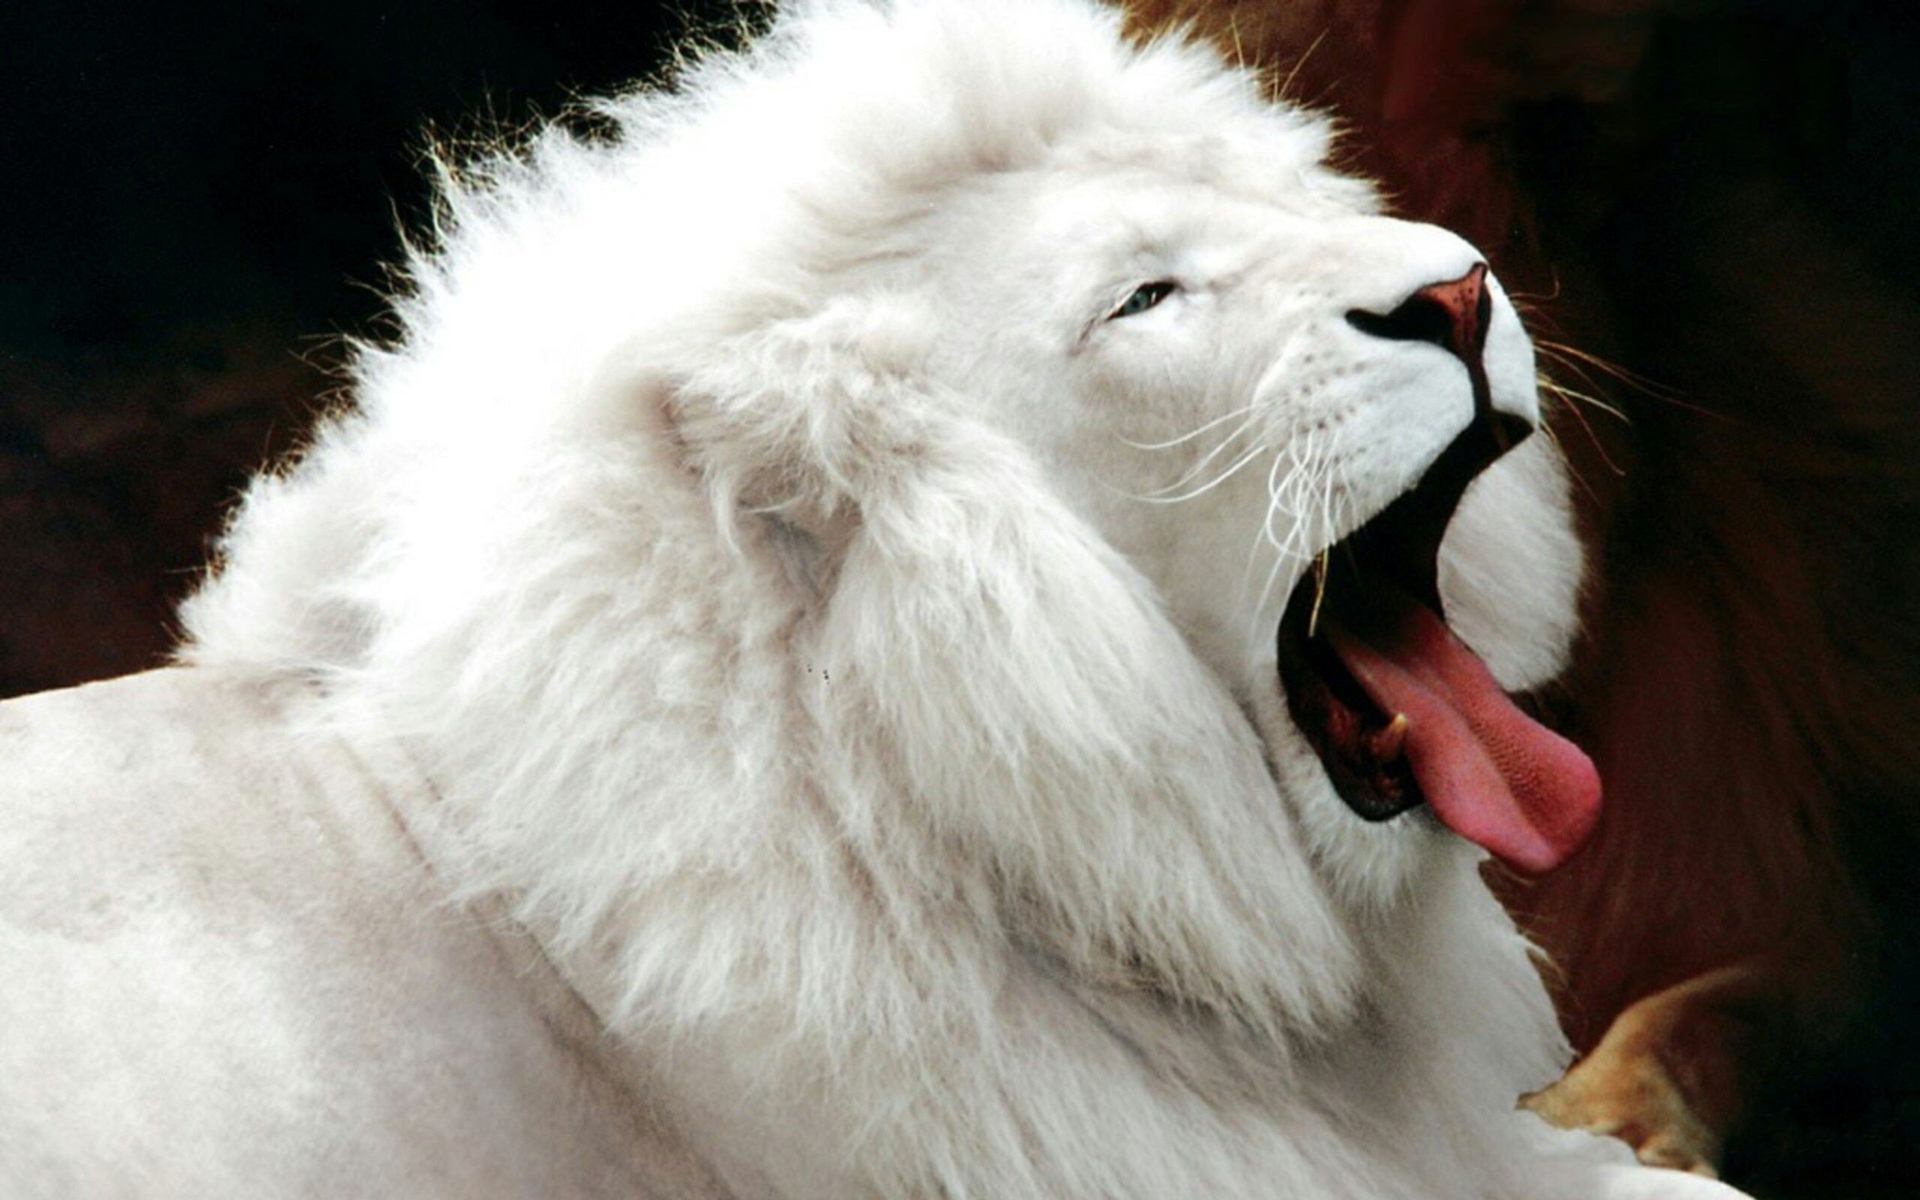 205666 免費下載壁紙 动物, 白狮子, 狮子 屏保和圖片